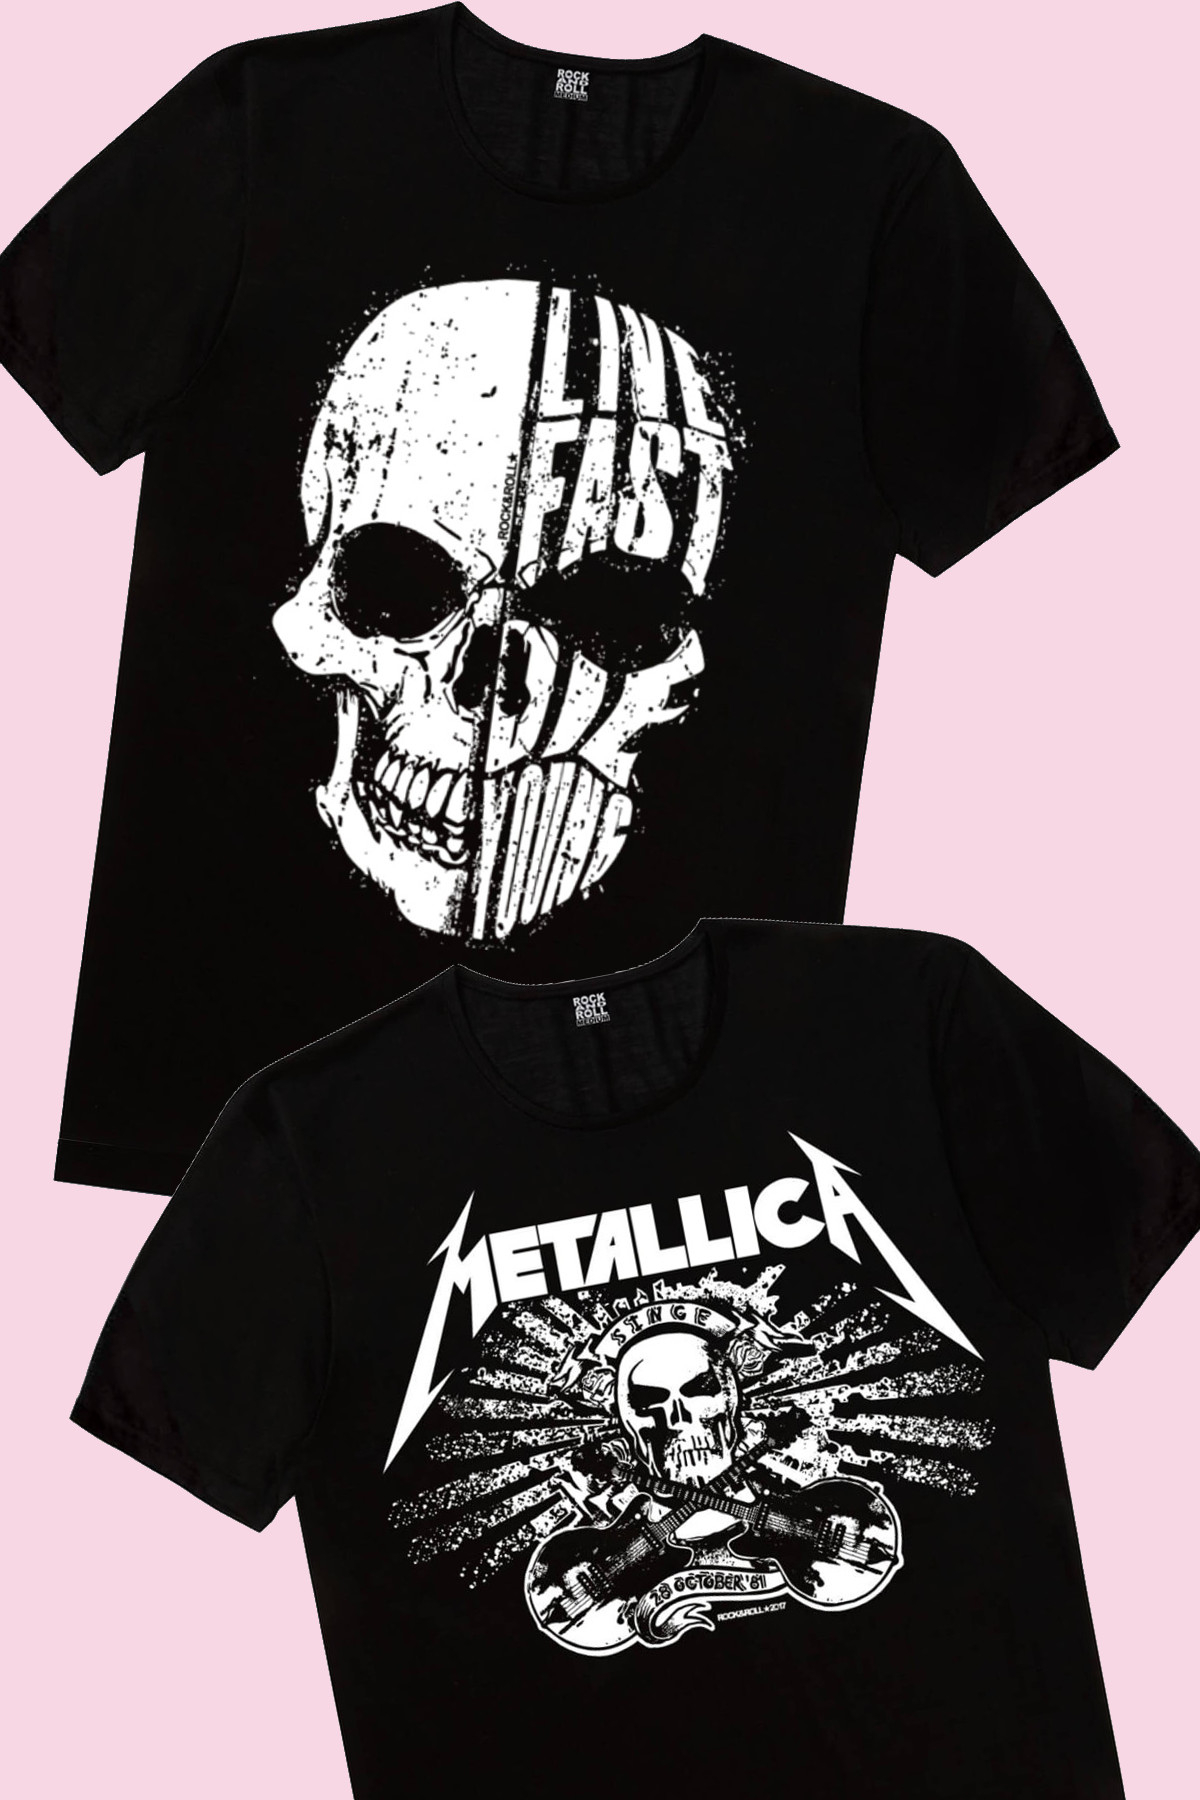 Hızlı Yaşa, Metallica Kurukafa Çocuk Tişört 2'li Eko Paket